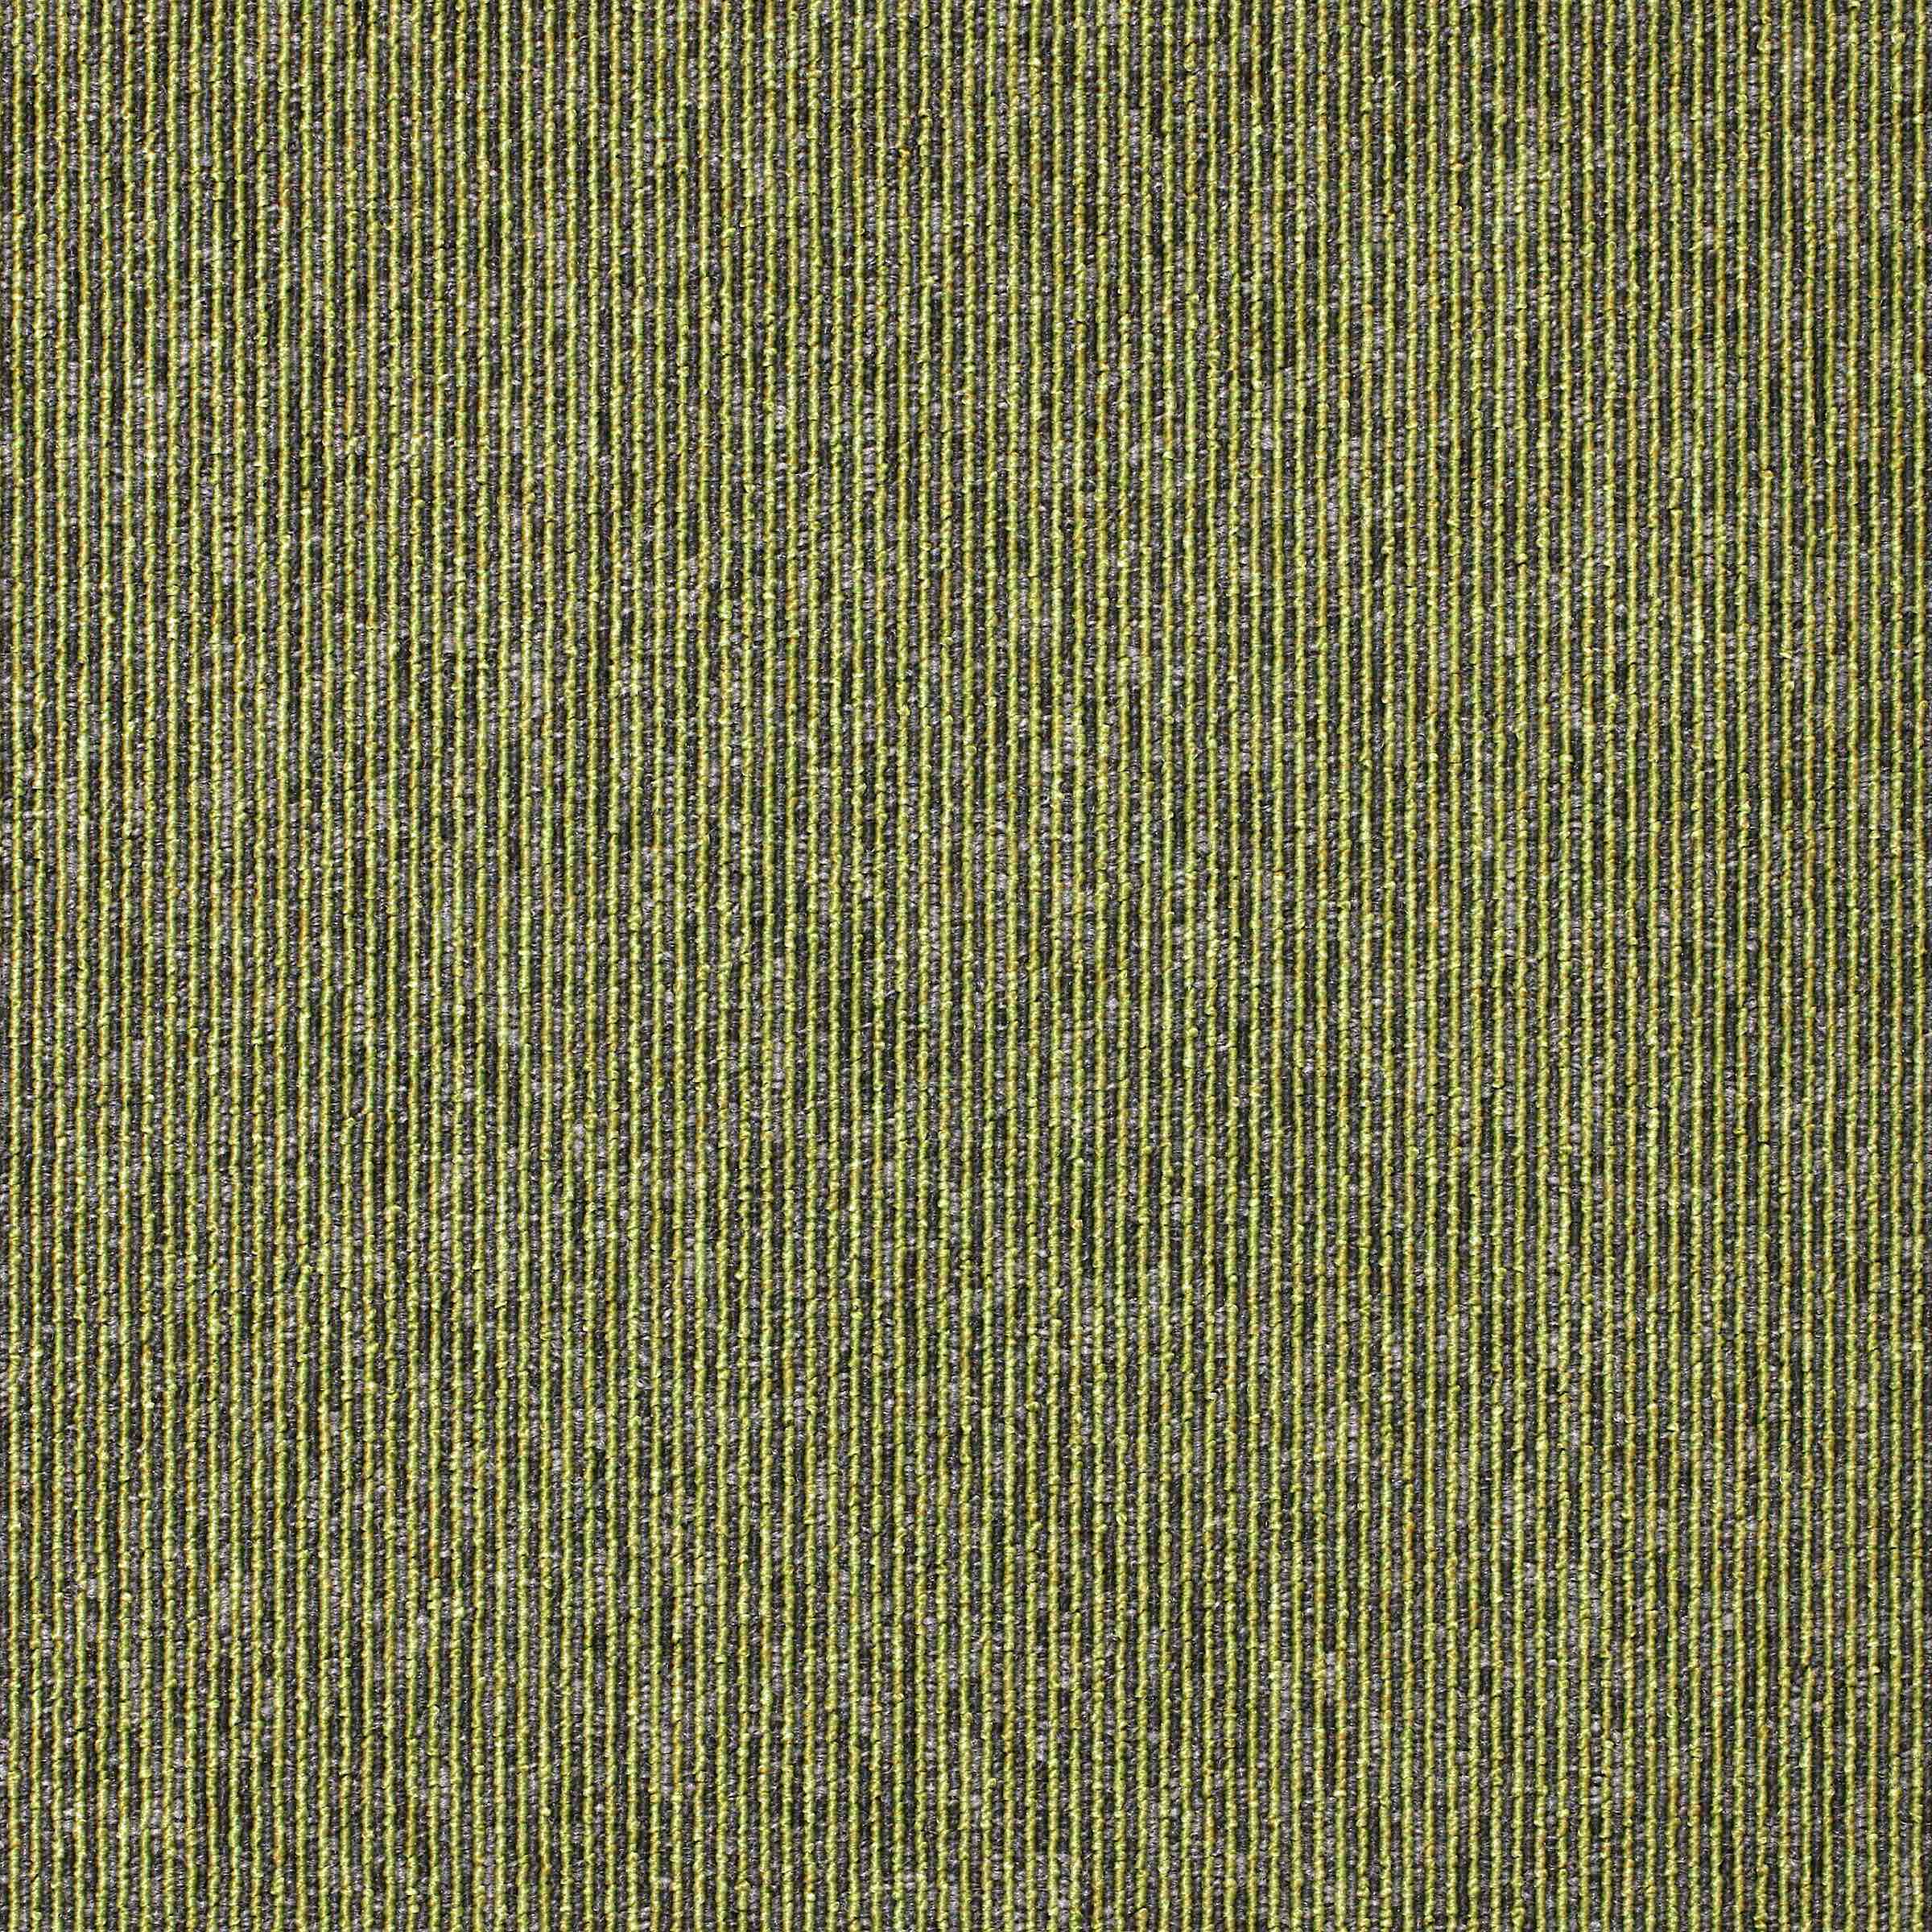 Sirocco Stripe | Spearmint | Paragon Carpet Tiles | Commercial Carpet Tiles